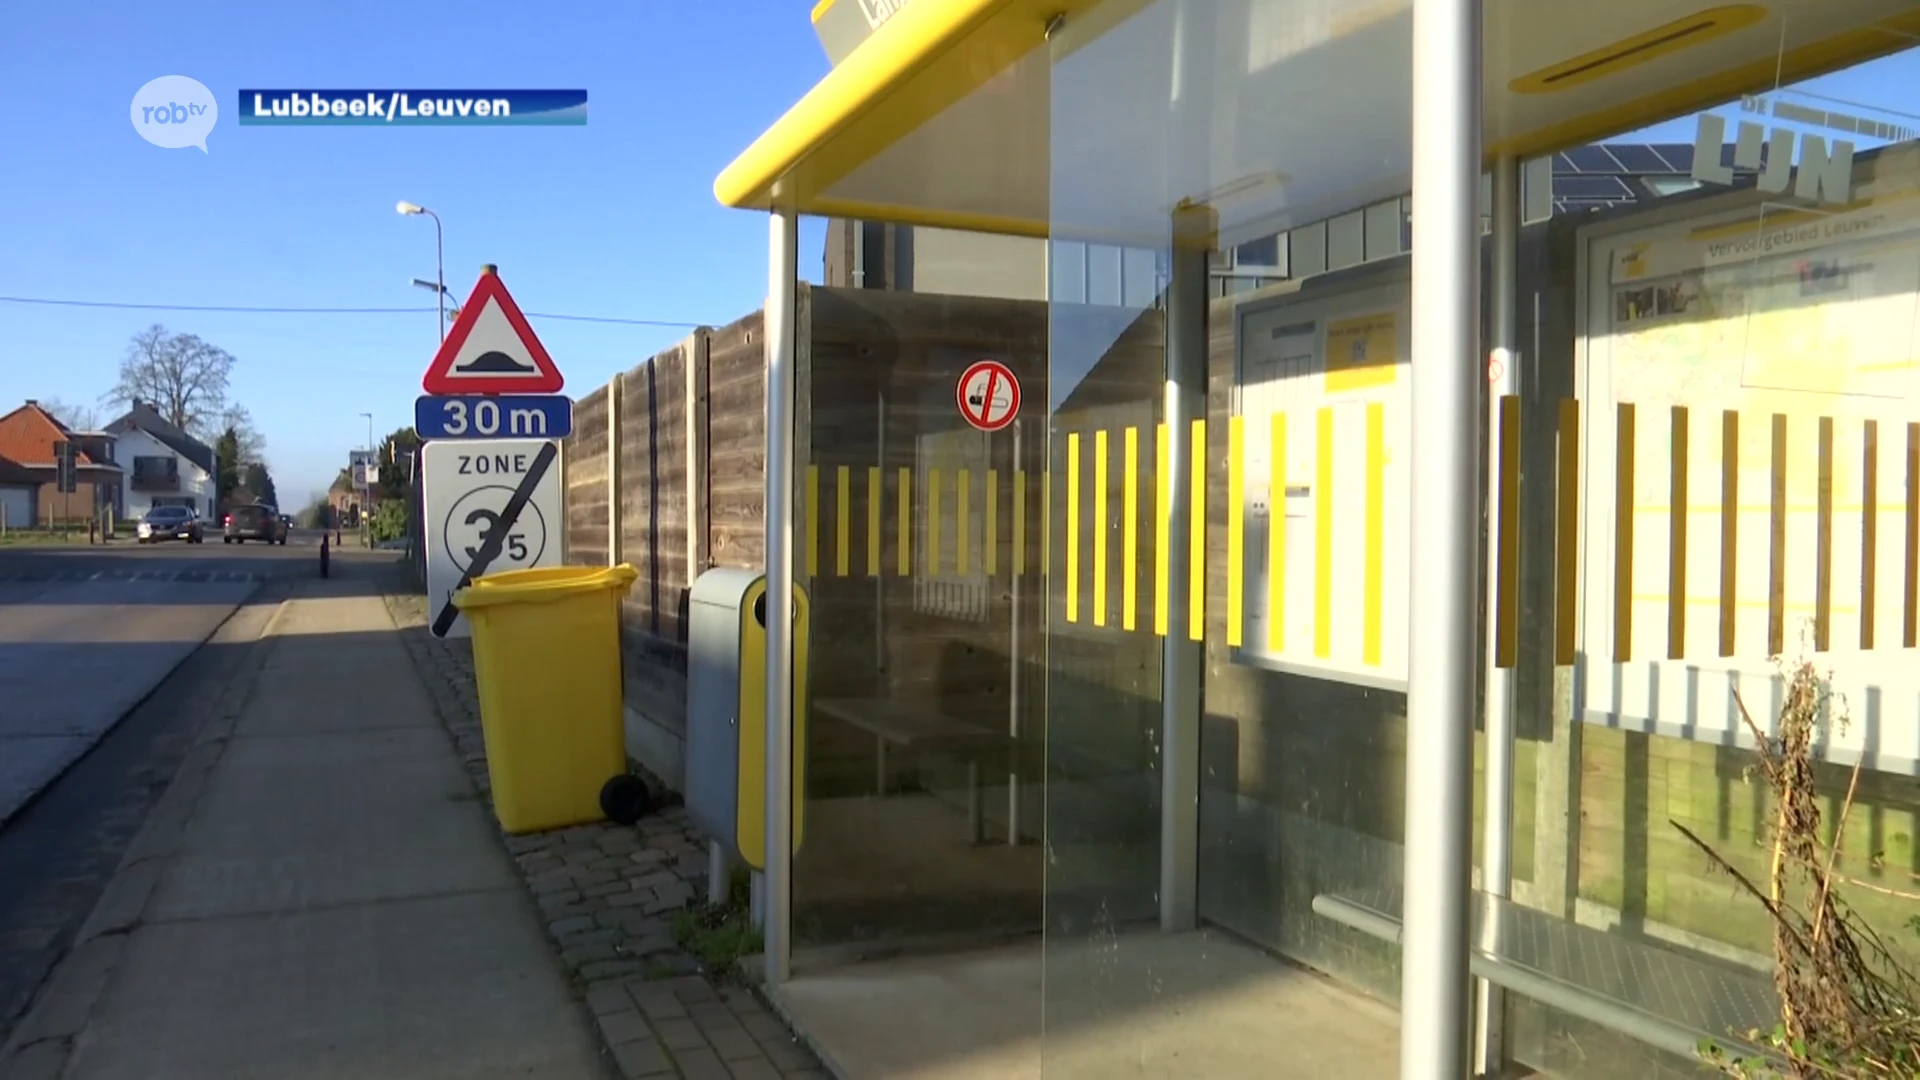 Leerlingen zitten soms 2 uur op Lijnbus om afstand van 10 kilometer af te leggen tussen Leuven en Lubbeek: "Structurele oplossingen nodig"